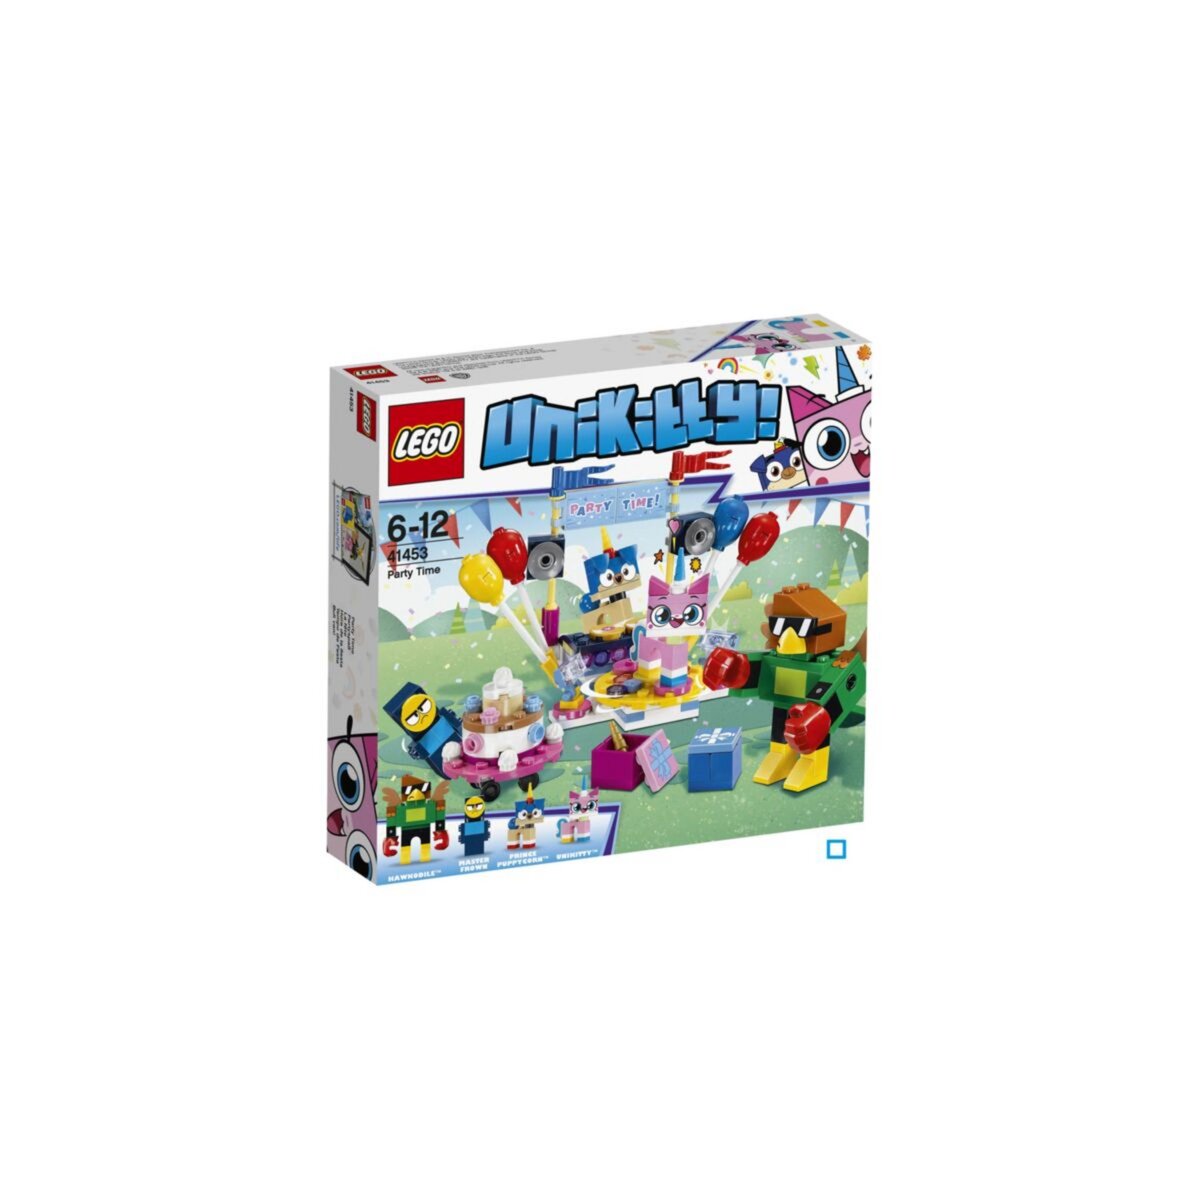 LEGO Unikitty! 41453 - La fête  